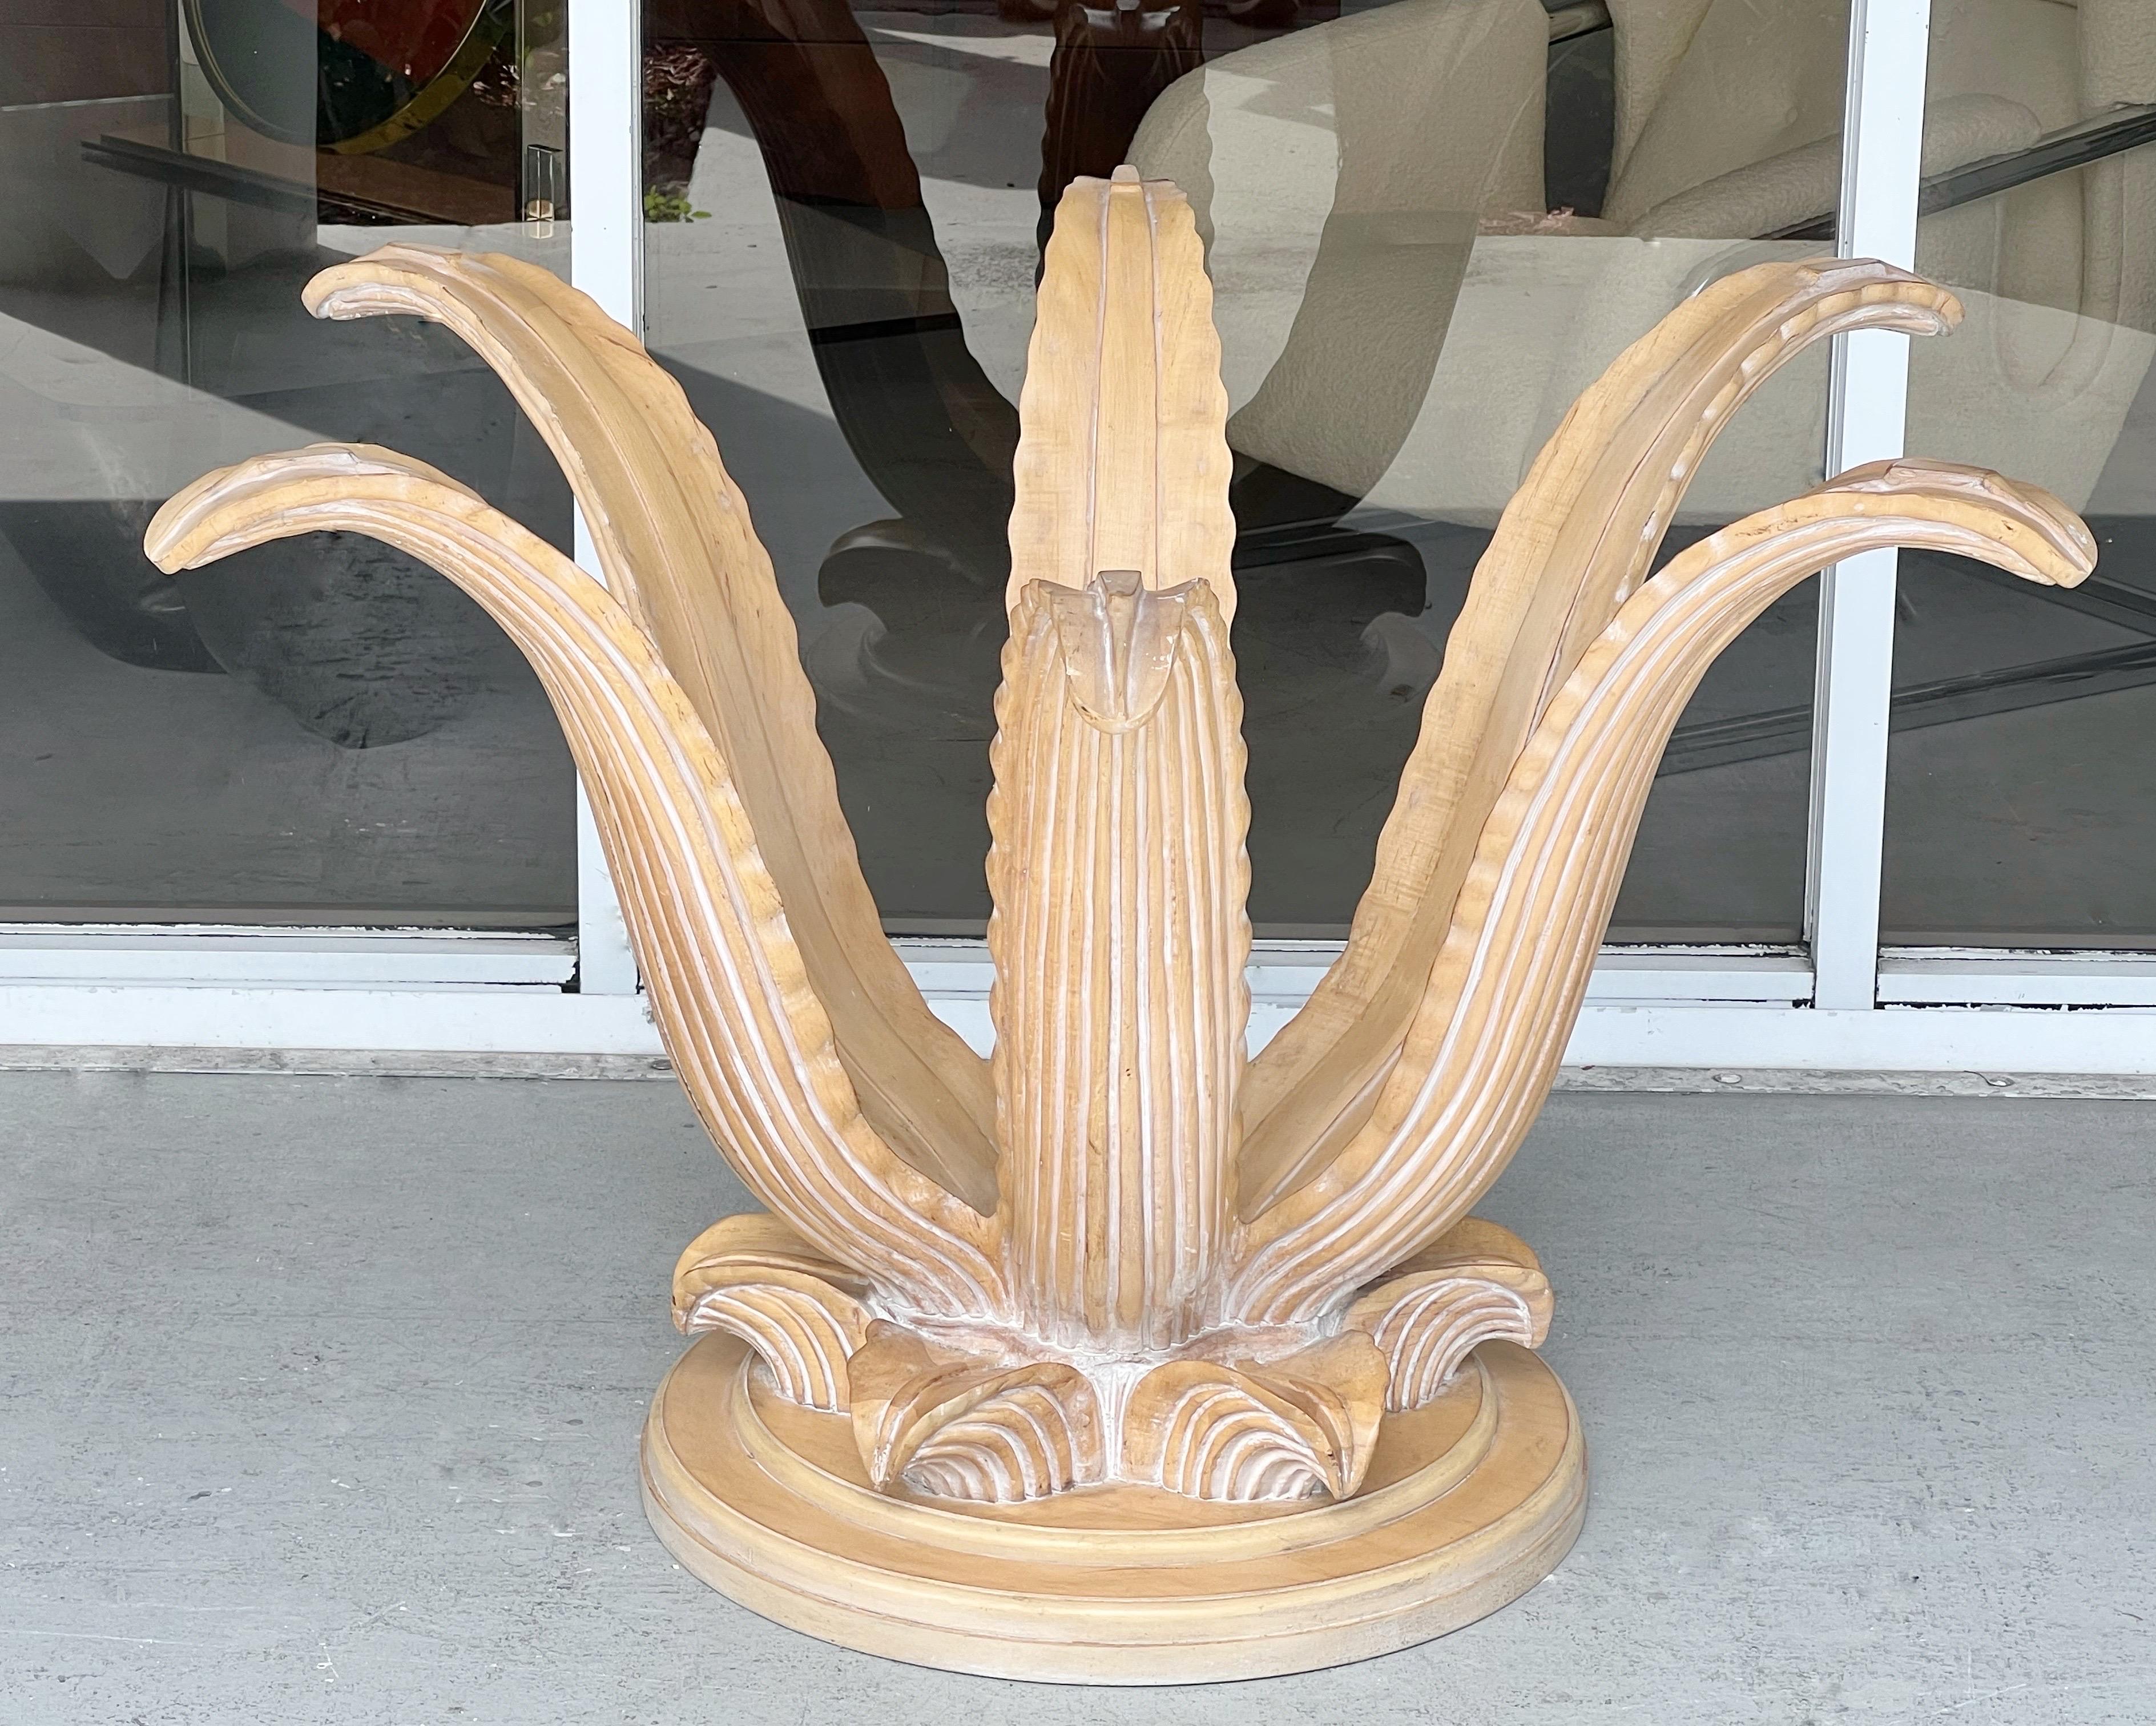 Ein Esstisch aus geschnitztem Holz aus den 1970er Jahren. Eine stilisierte Agavenpflanze in Lebensgröße, deren Blätter die Glasplatte mit einem Durchmesser von 60 Zoll tragen. Ned's neues Oberteil. Die Schnitzerei ist subtil und die Linien sind